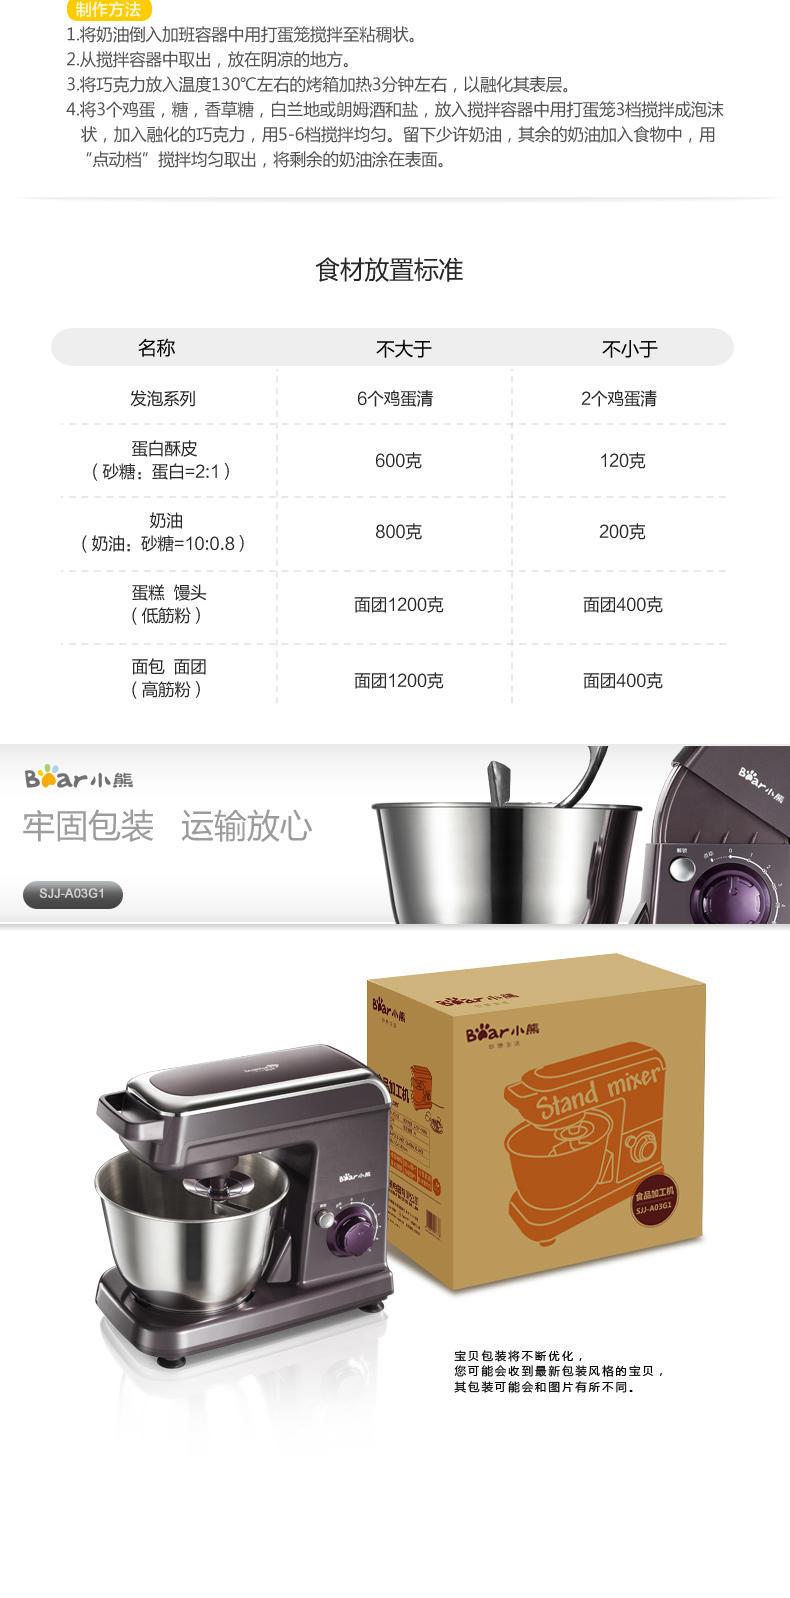 Bear/小熊 SJJ-A03G1和面机家用自动揉面机搅面机电动厨师机